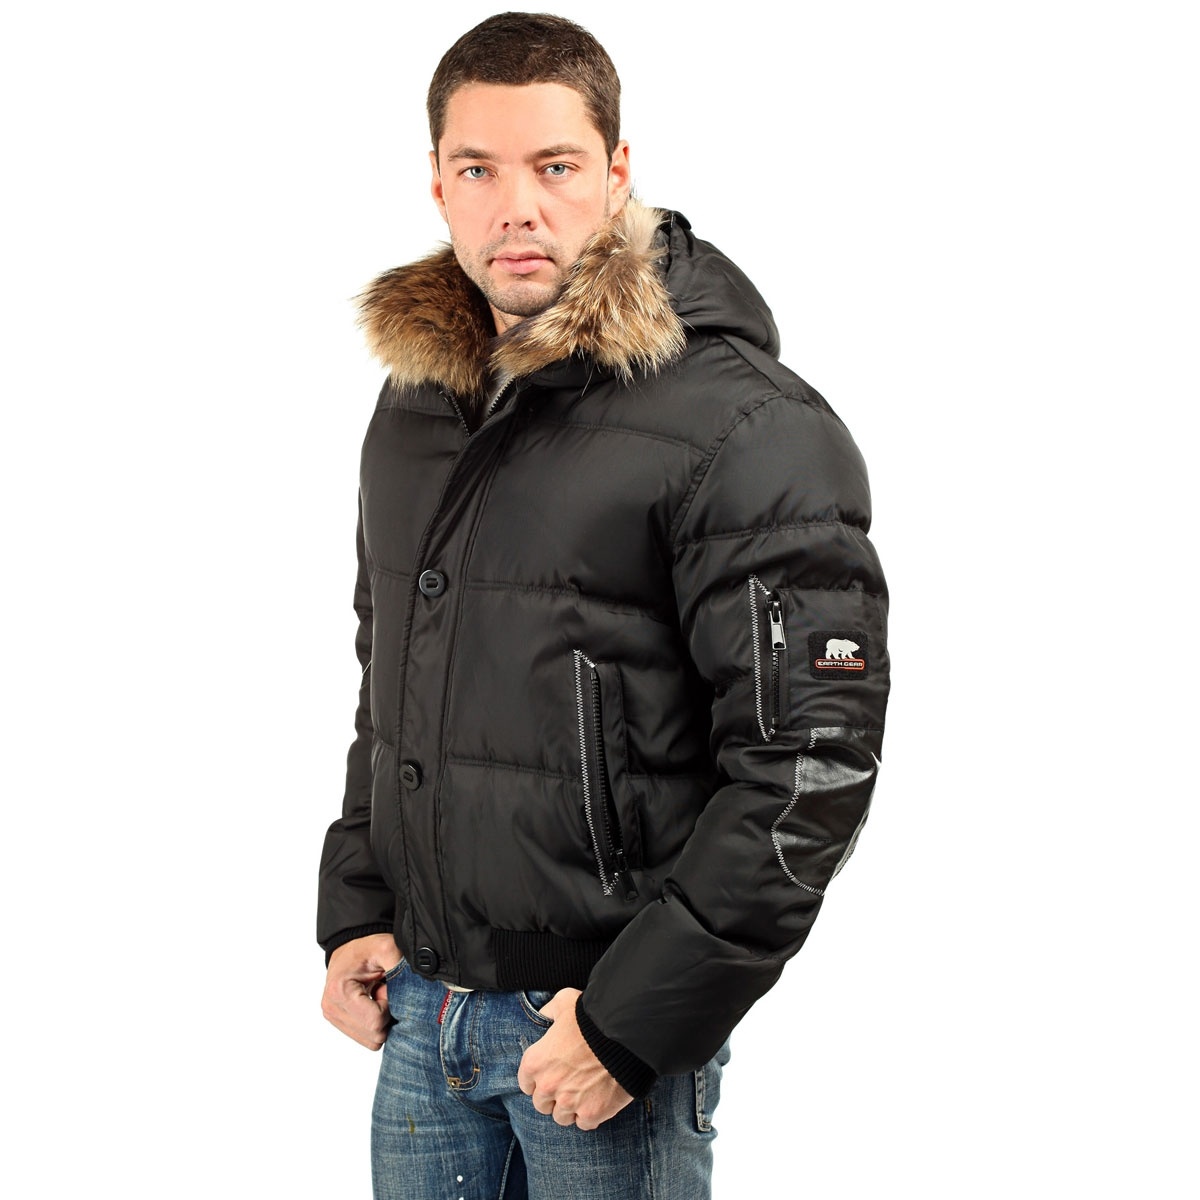 Куртку мужскую купить интернет недорого. Earth Gear куртка мужская зимняя. Короткая куртка мужская. Пуховик мужской зимний короткий. Куртки мужские зимние короткие модные.